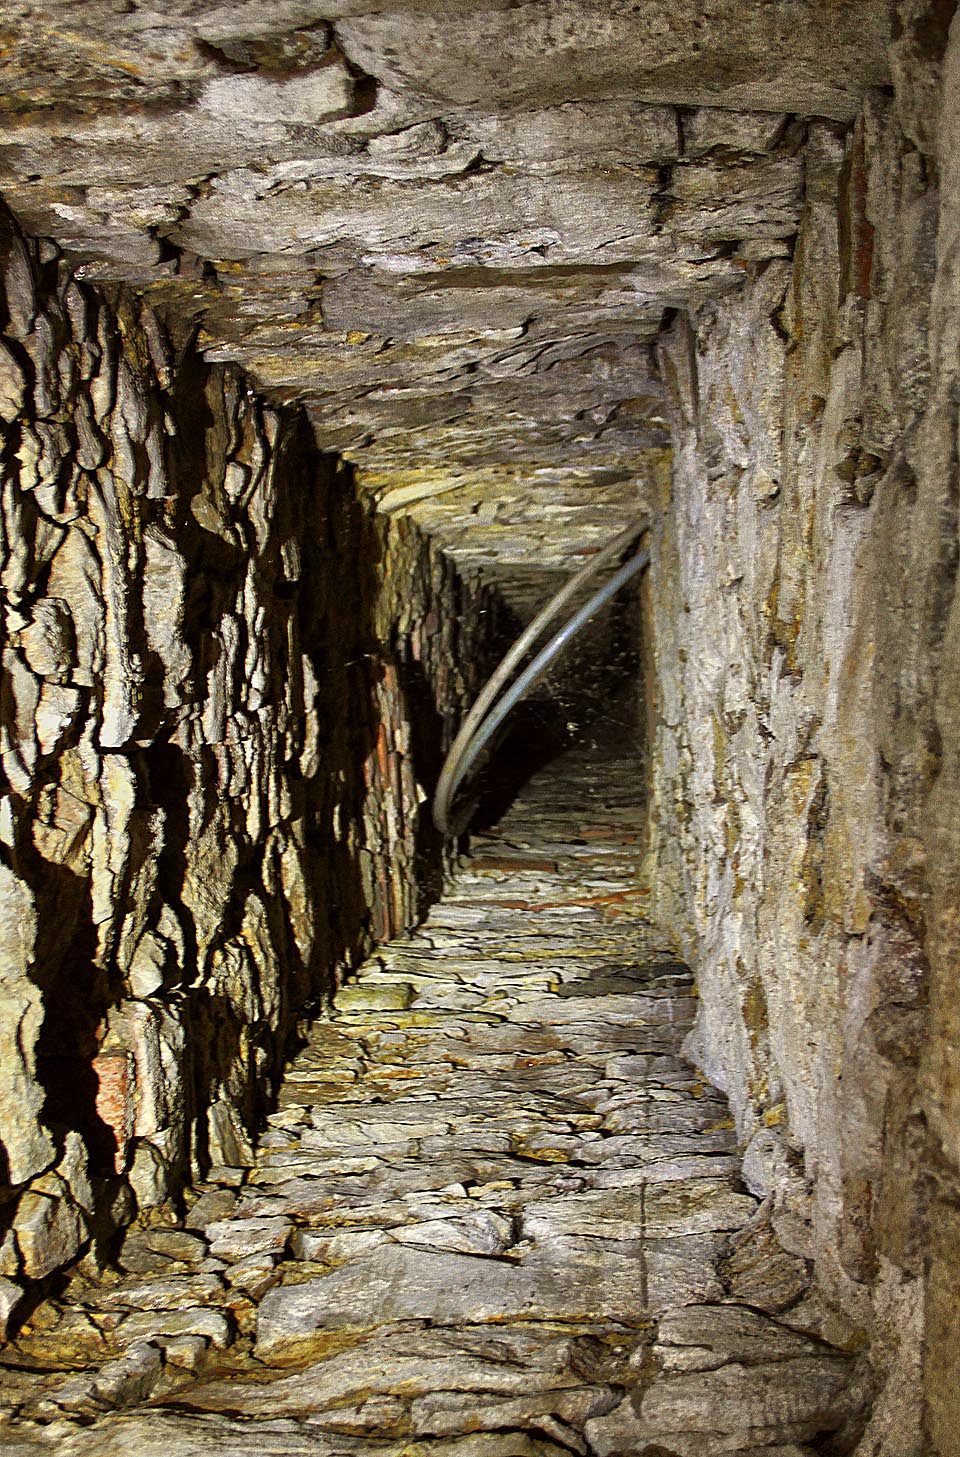 Některé šachtice stoupají kamenným zdivem z podzemí až do vyšších pater kláštera.